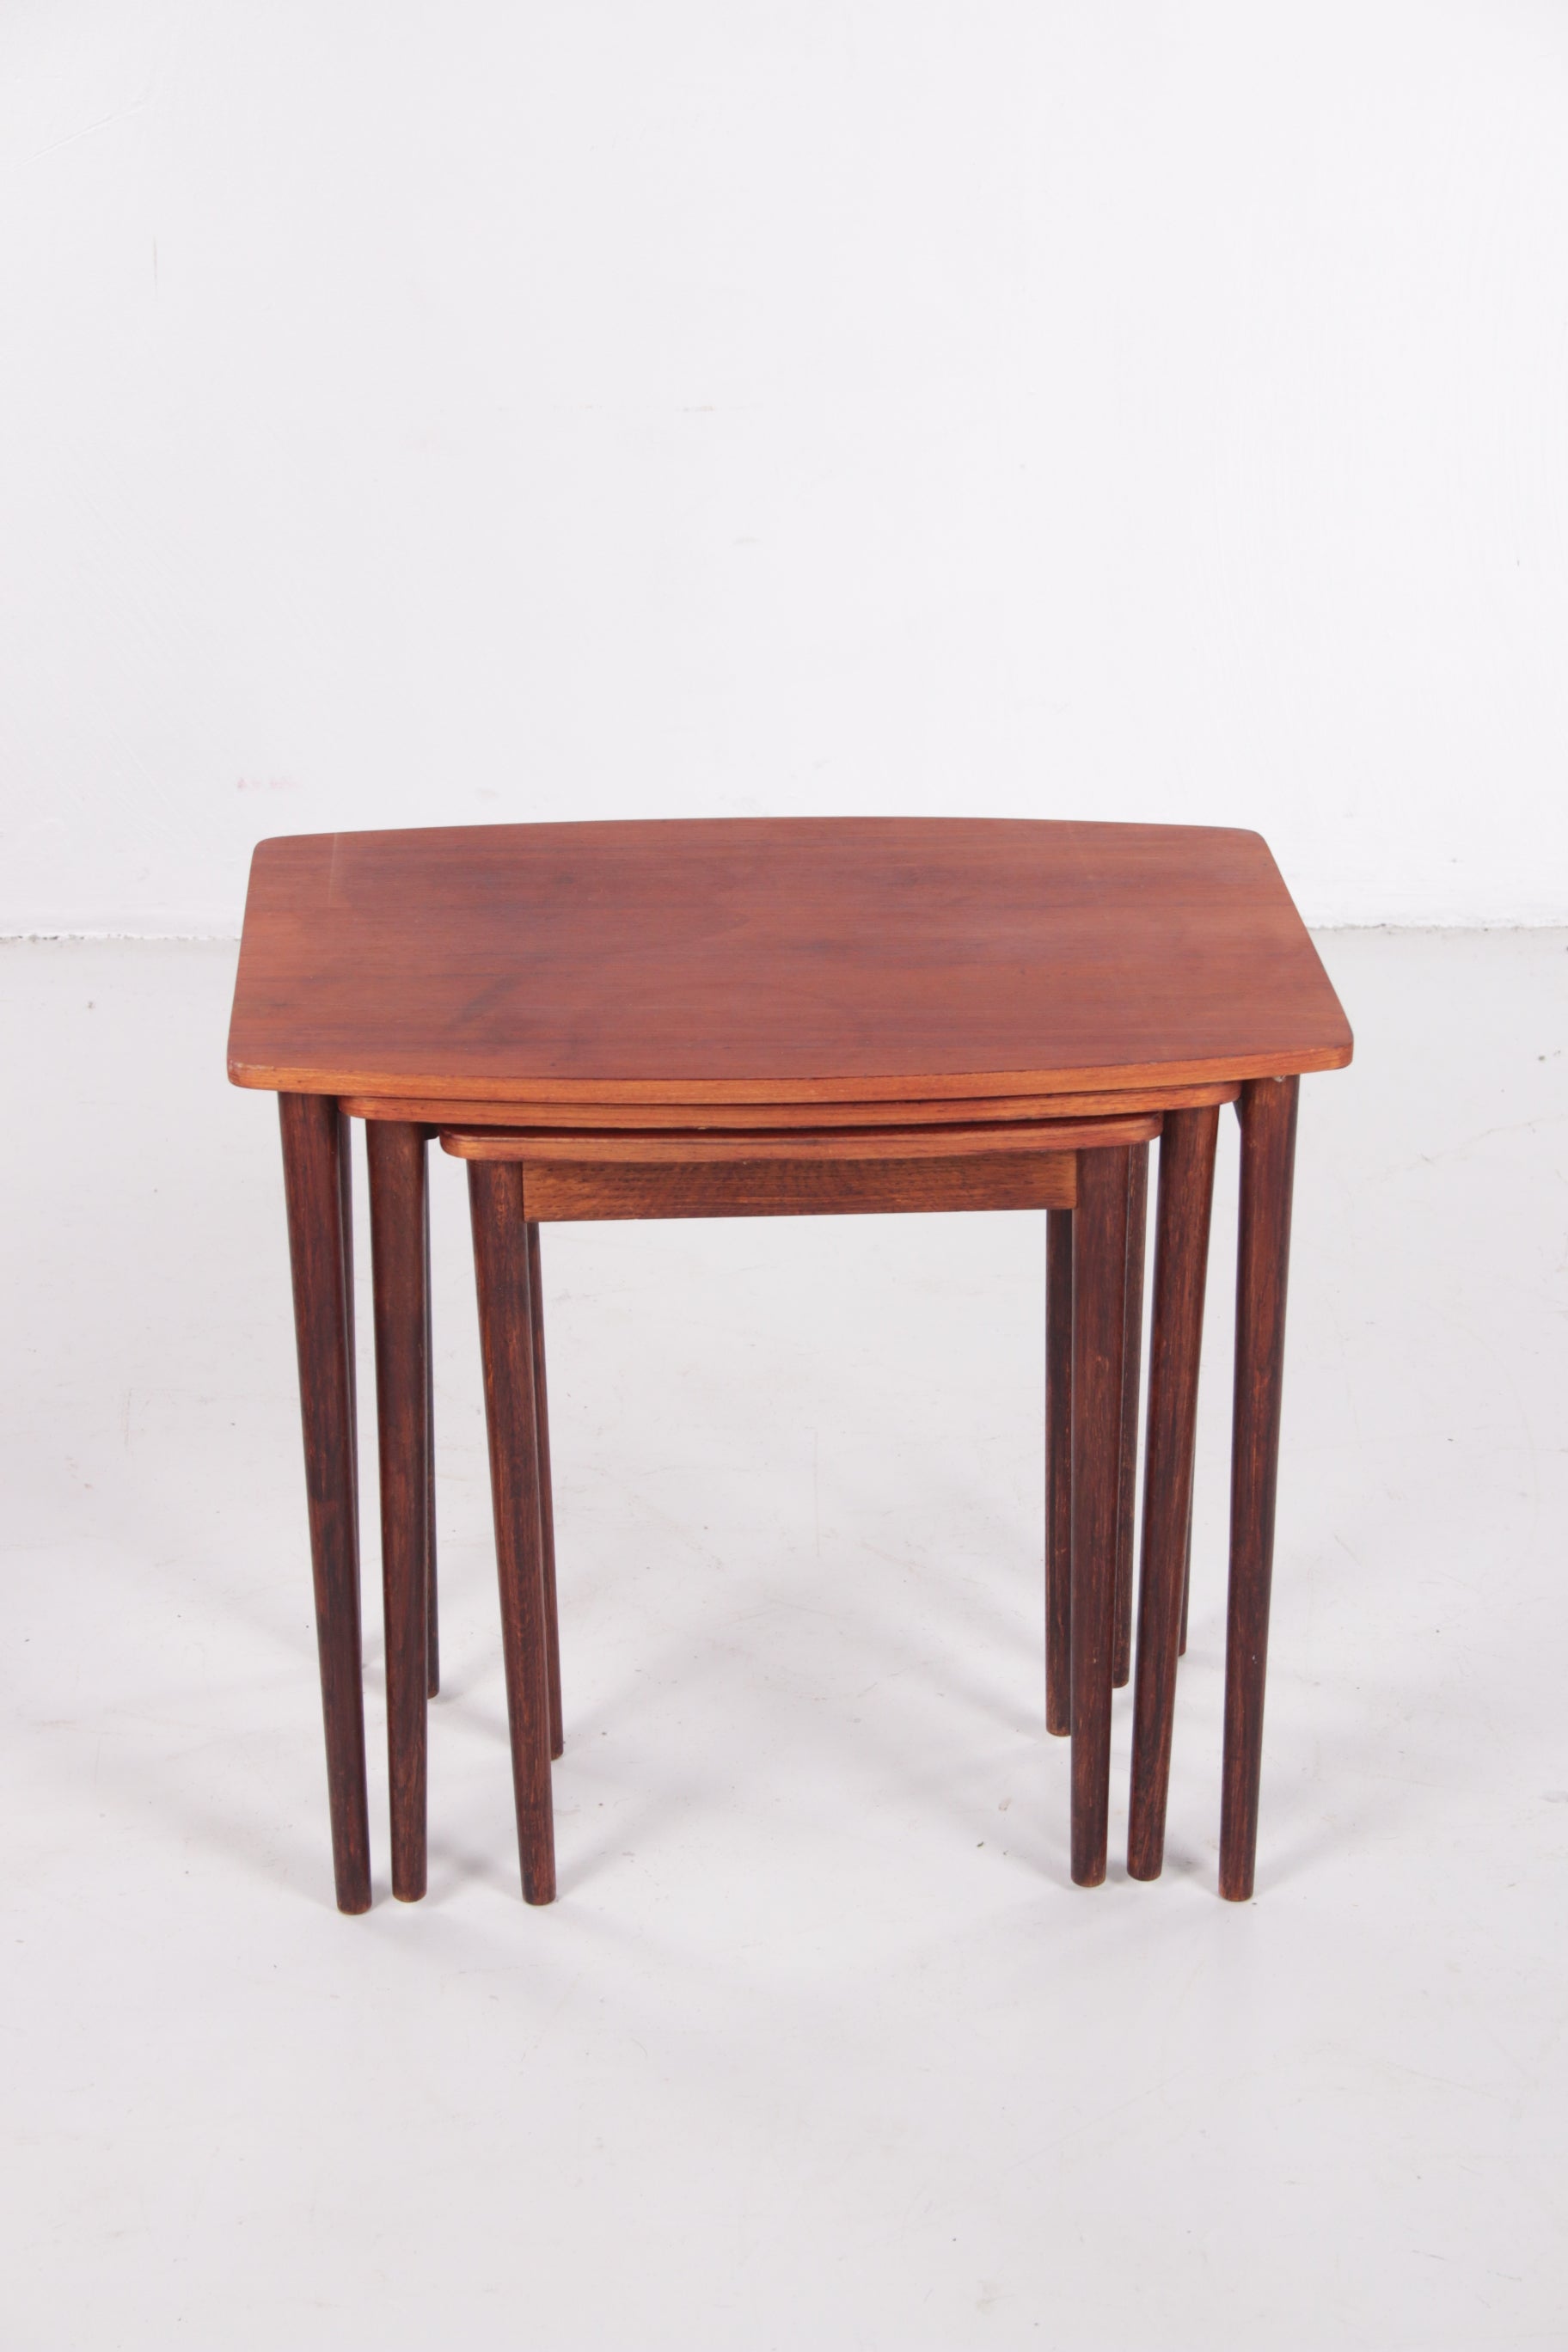 Vintage Deens design nesting tables mimiset bijzettafels van teak hout set voorkant